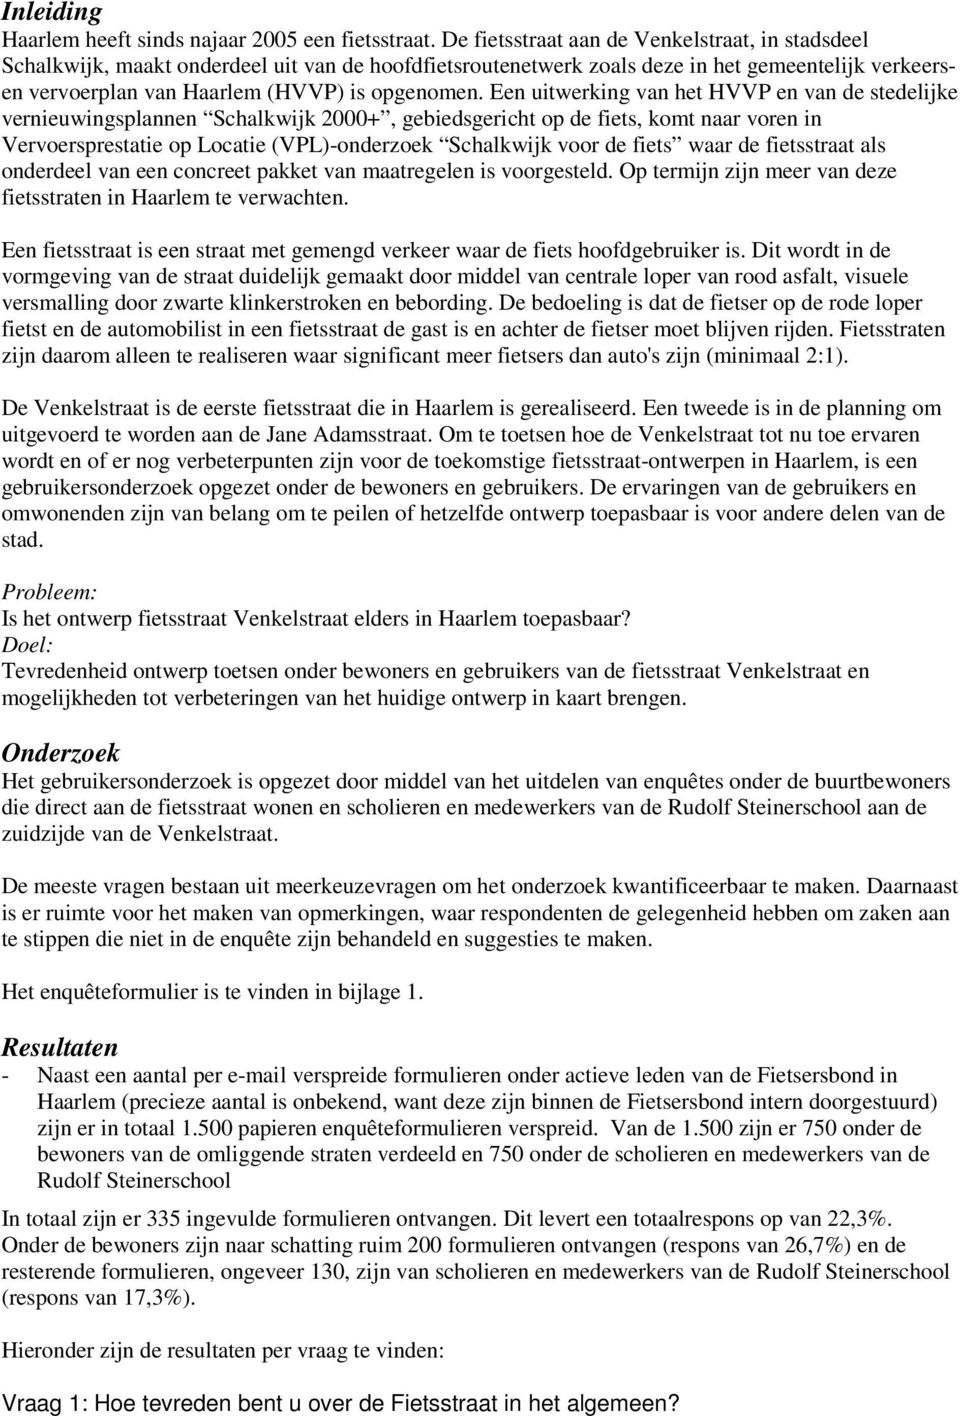 Een uitwerking van het HVVP en van de stedelijke vernieuwingsplannen Schalkwijk 2000+, gebiedsgericht op de fiets, komt naar voren in Vervoersprestatie op Locatie (VPL)-onderzoek Schalkwijk voor de